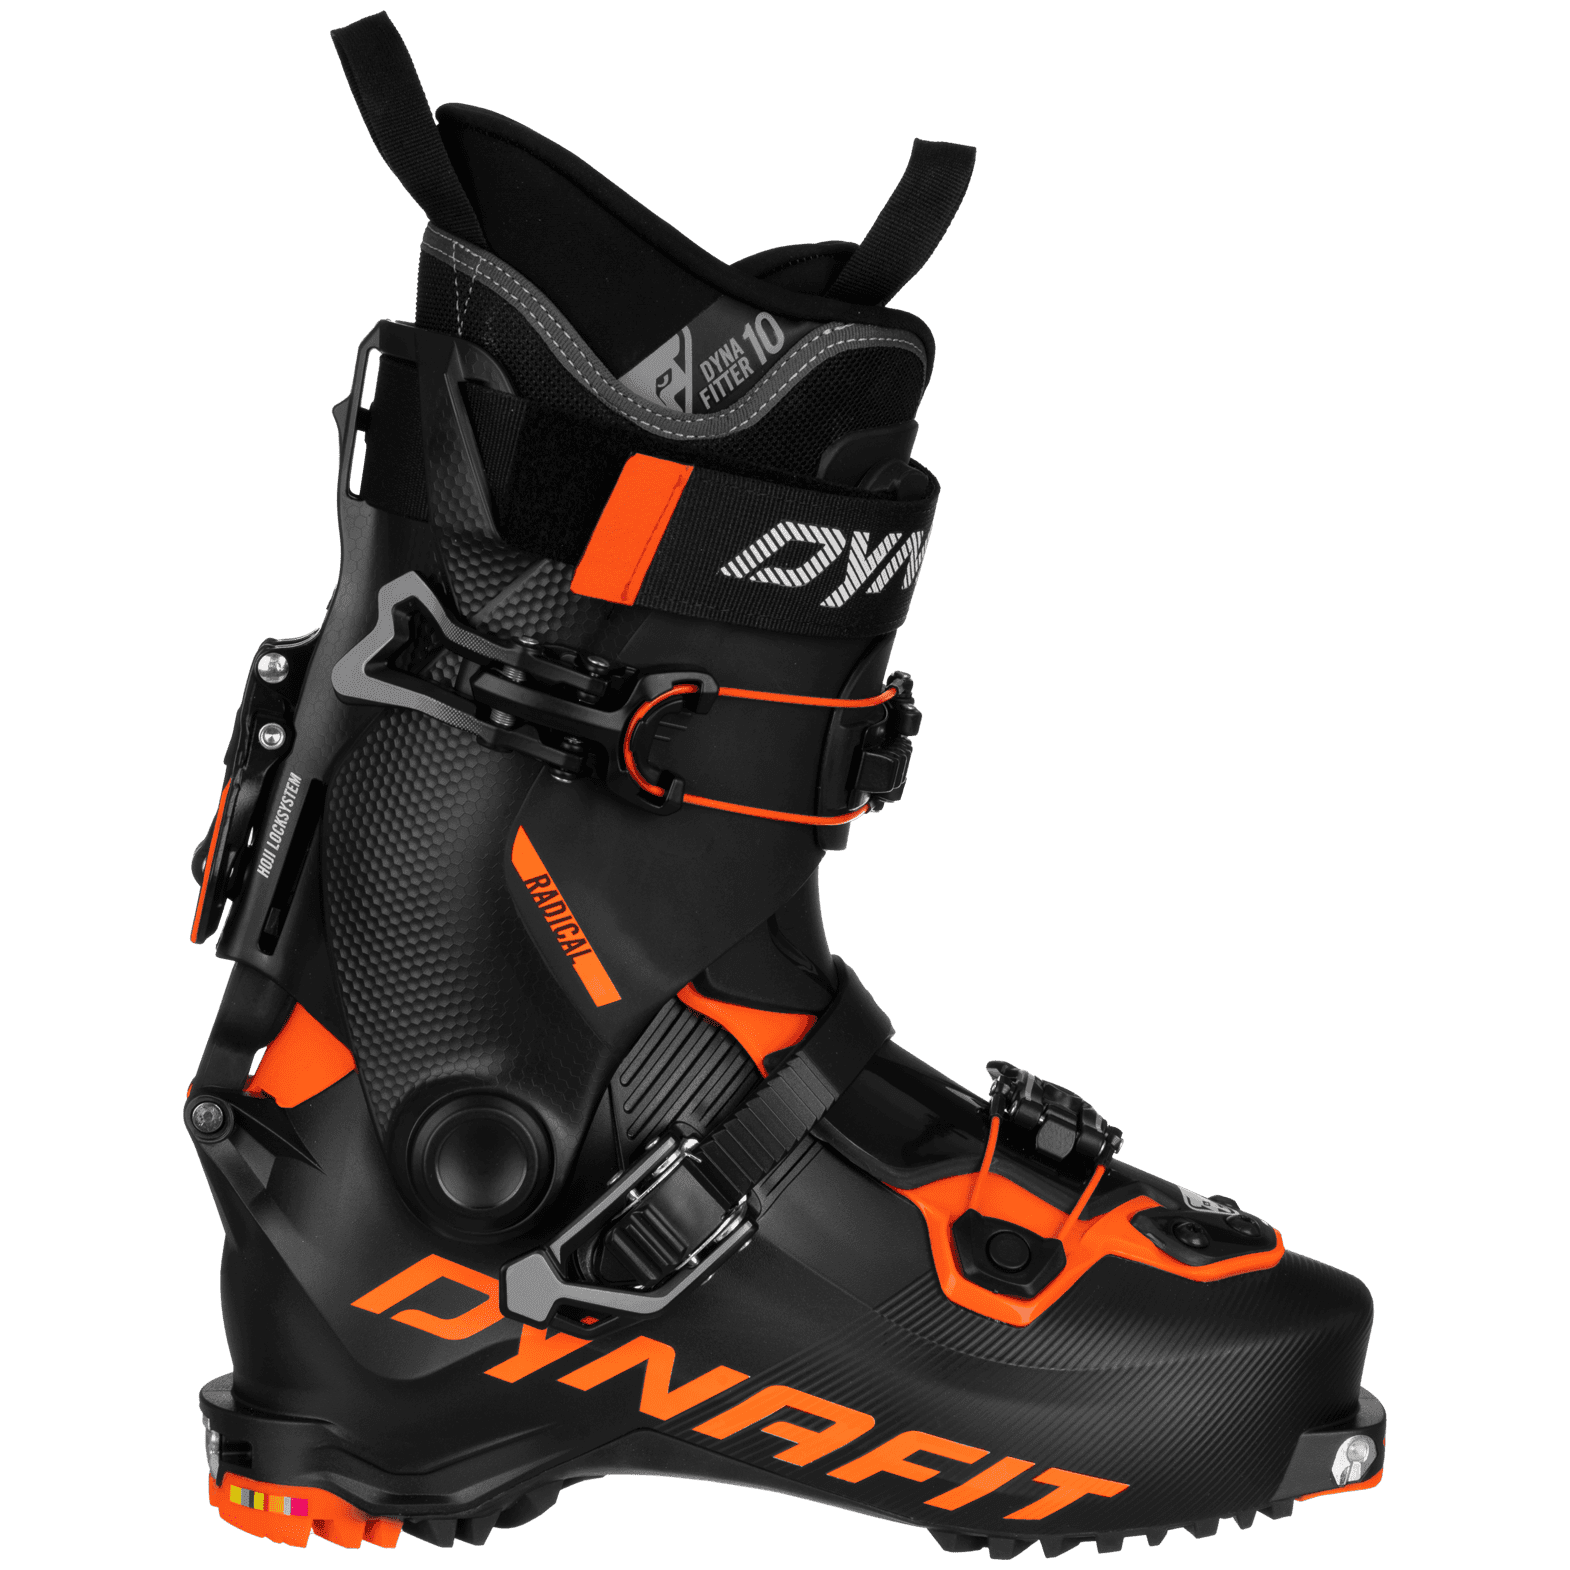 Lyžařské boty Dynafit Radical 2.0 Velikost lyžařské boty: 27,5 cm / Barva: černá/oranžová